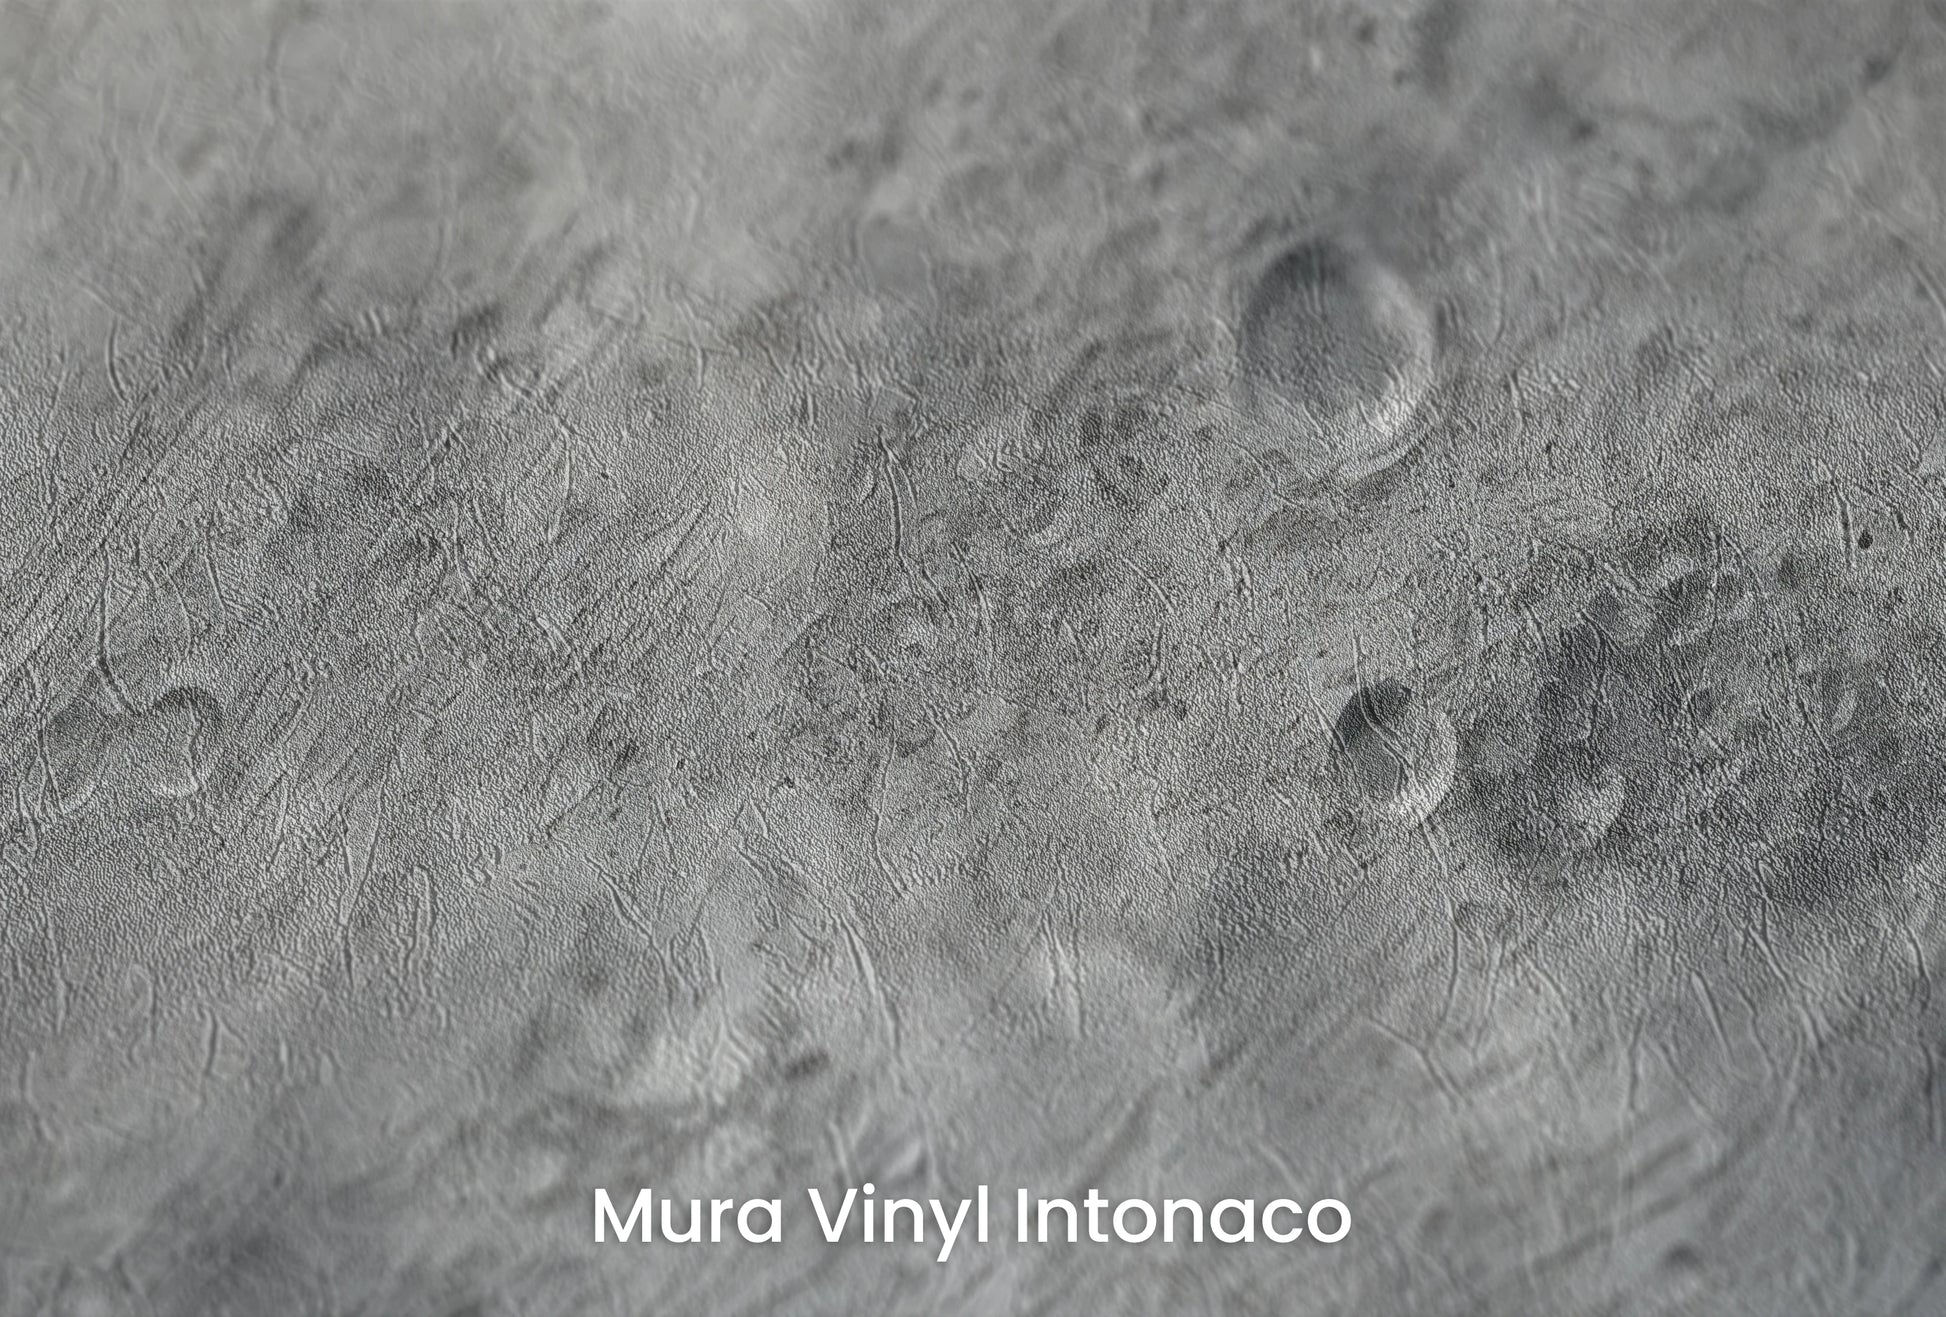 Zbliżenie na artystyczną fototapetę o nazwie Lunar Majesty na podłożu Mura Vinyl Intonaco - struktura tartego tynku.